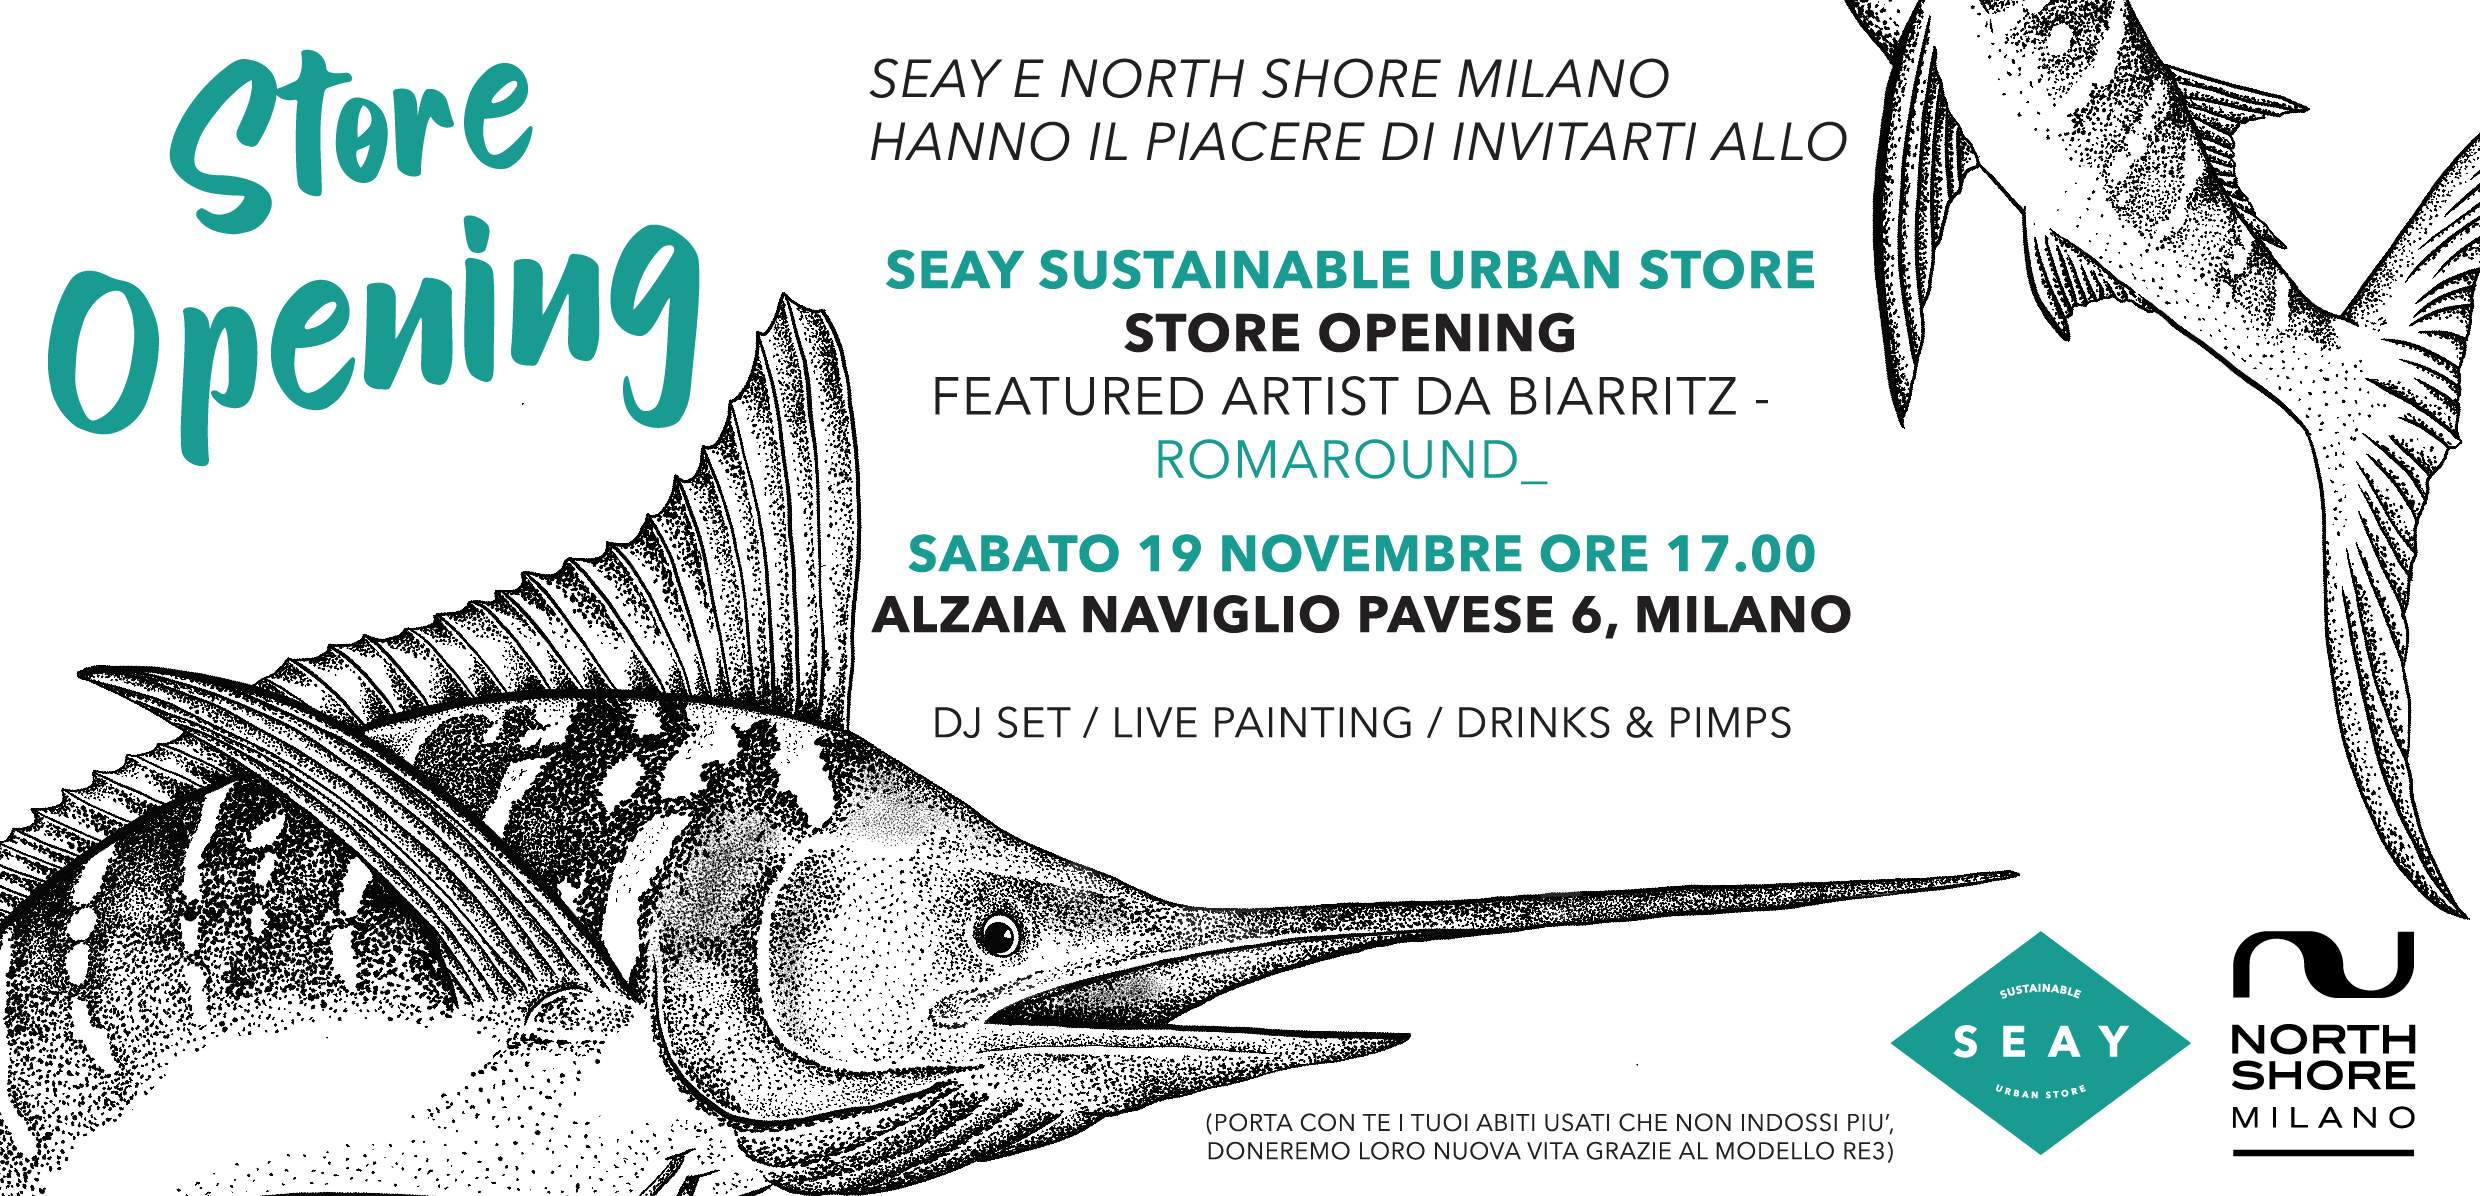 19 novembre 2022 - Inaugurazione Sustainable Urban Store - North Shore Milano x Seay